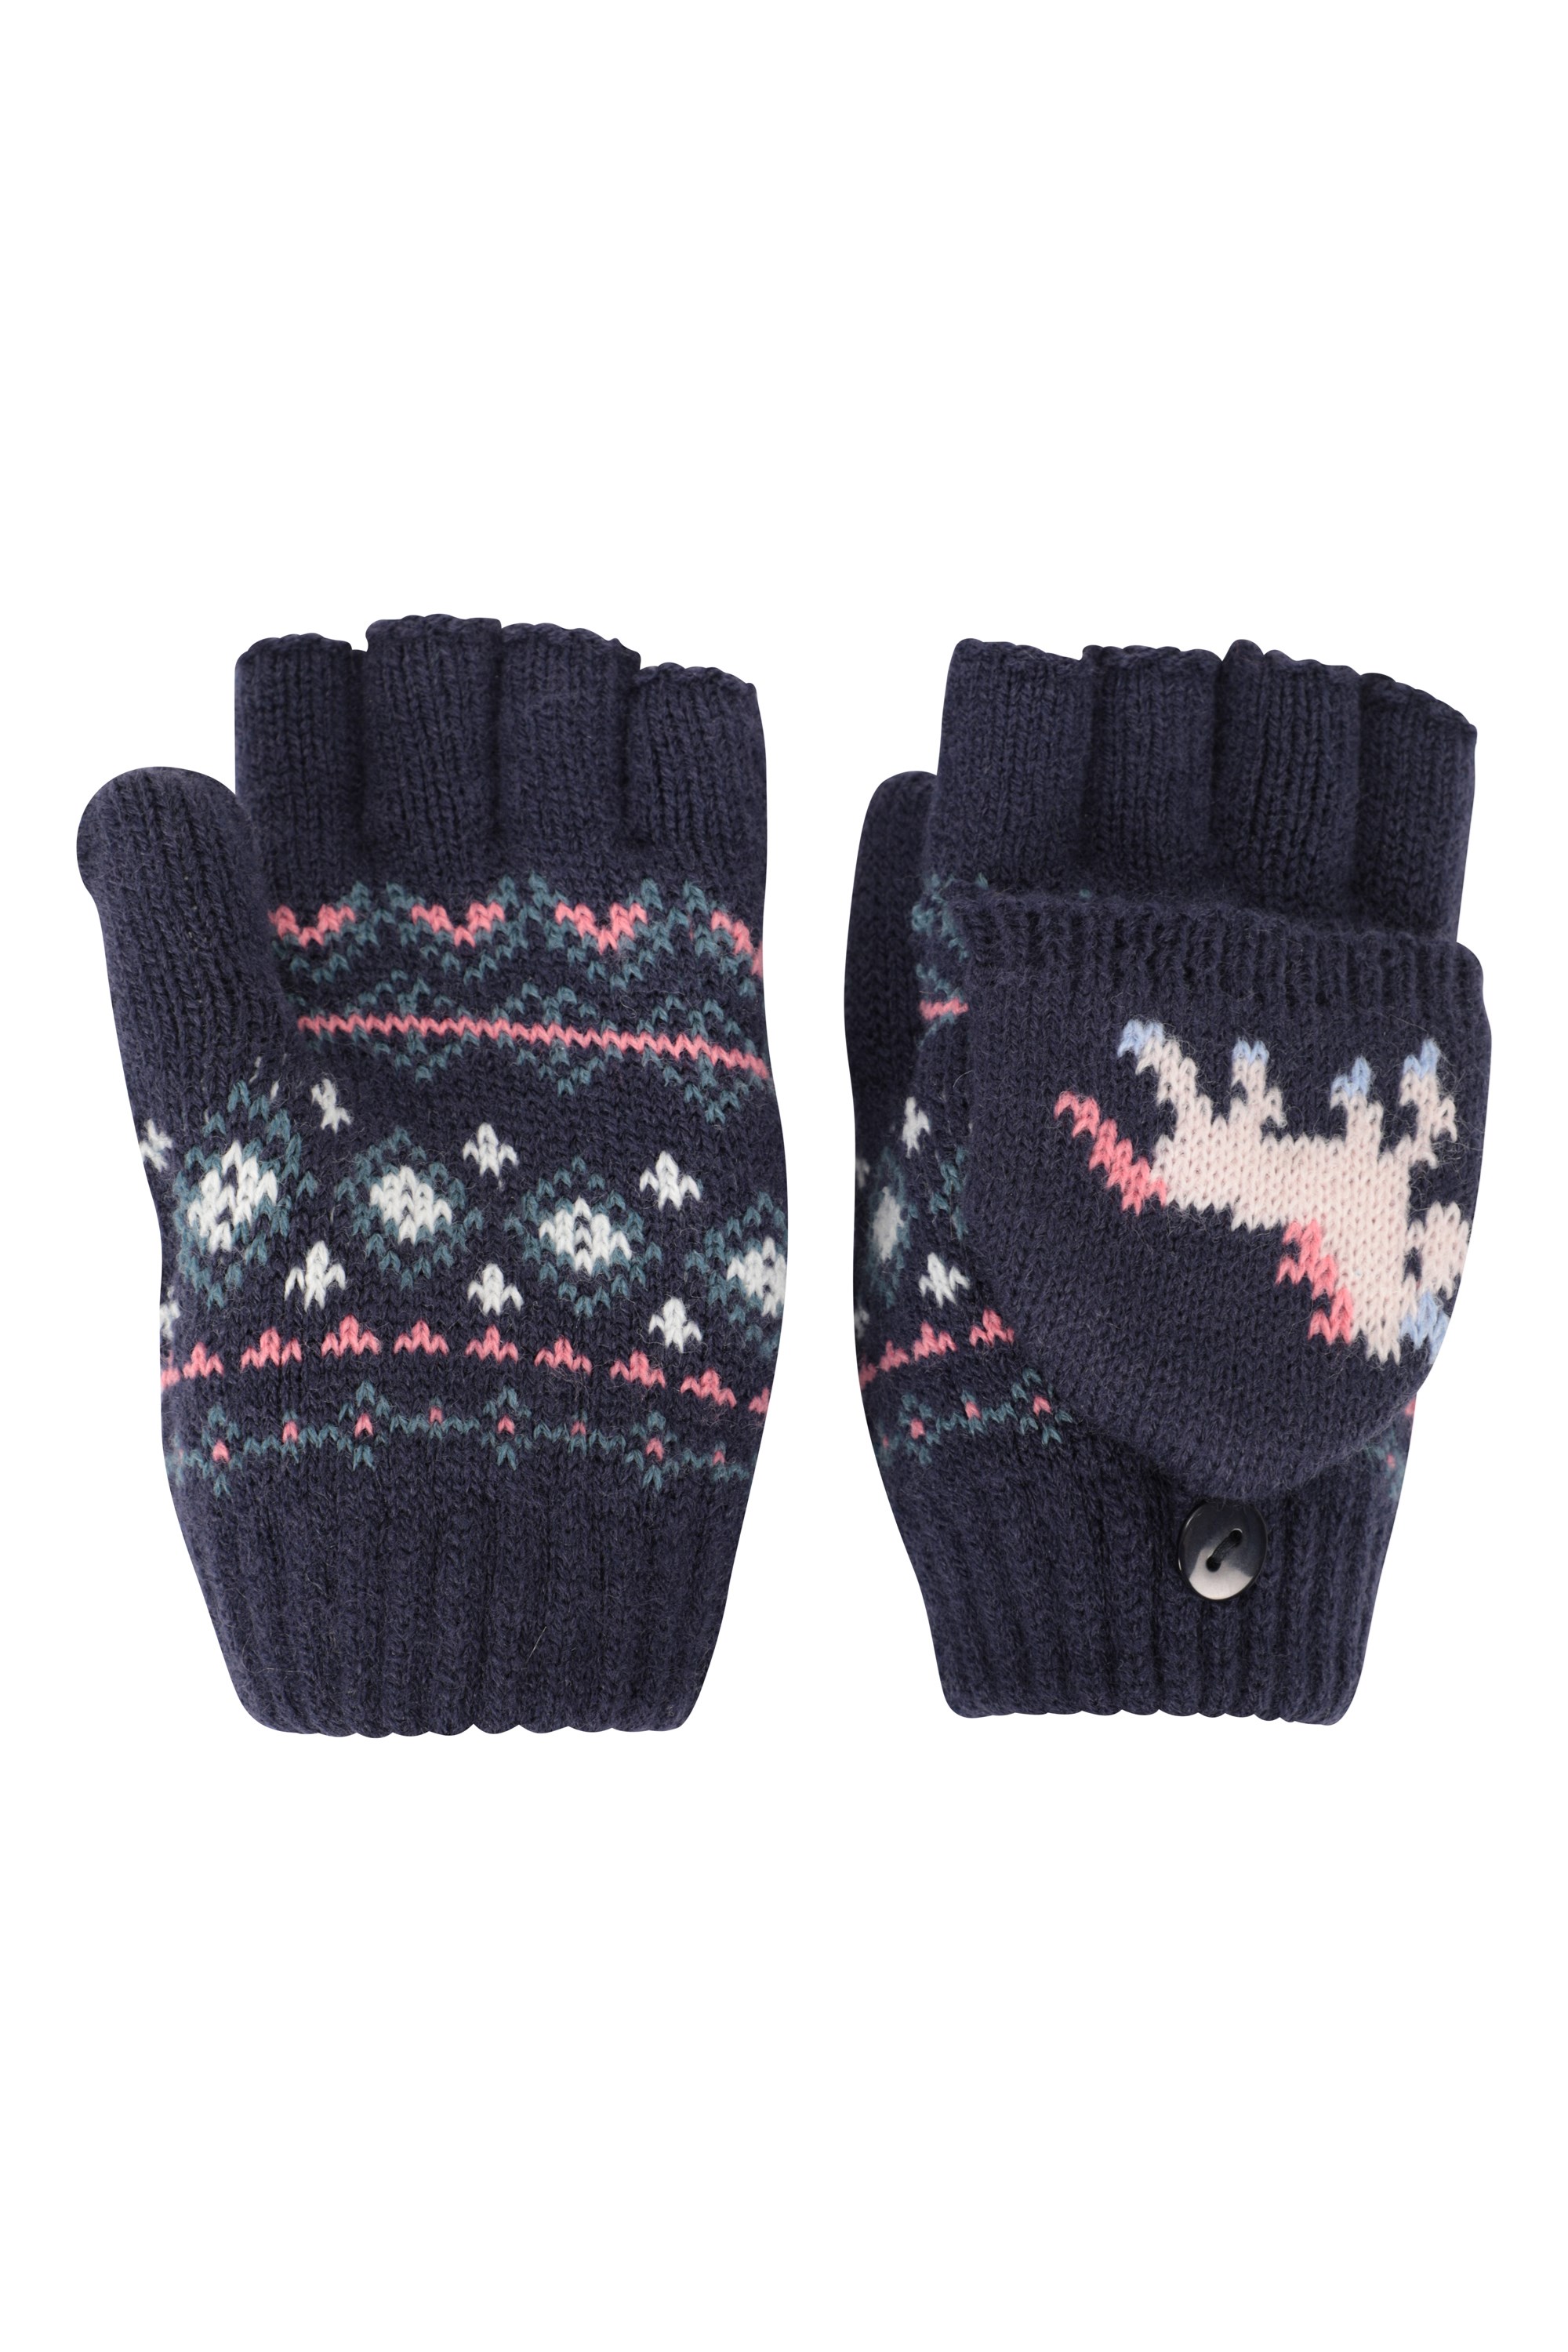 Mountain Warehouse Kid Fingerless Fleece Kids Mitten Gloves 